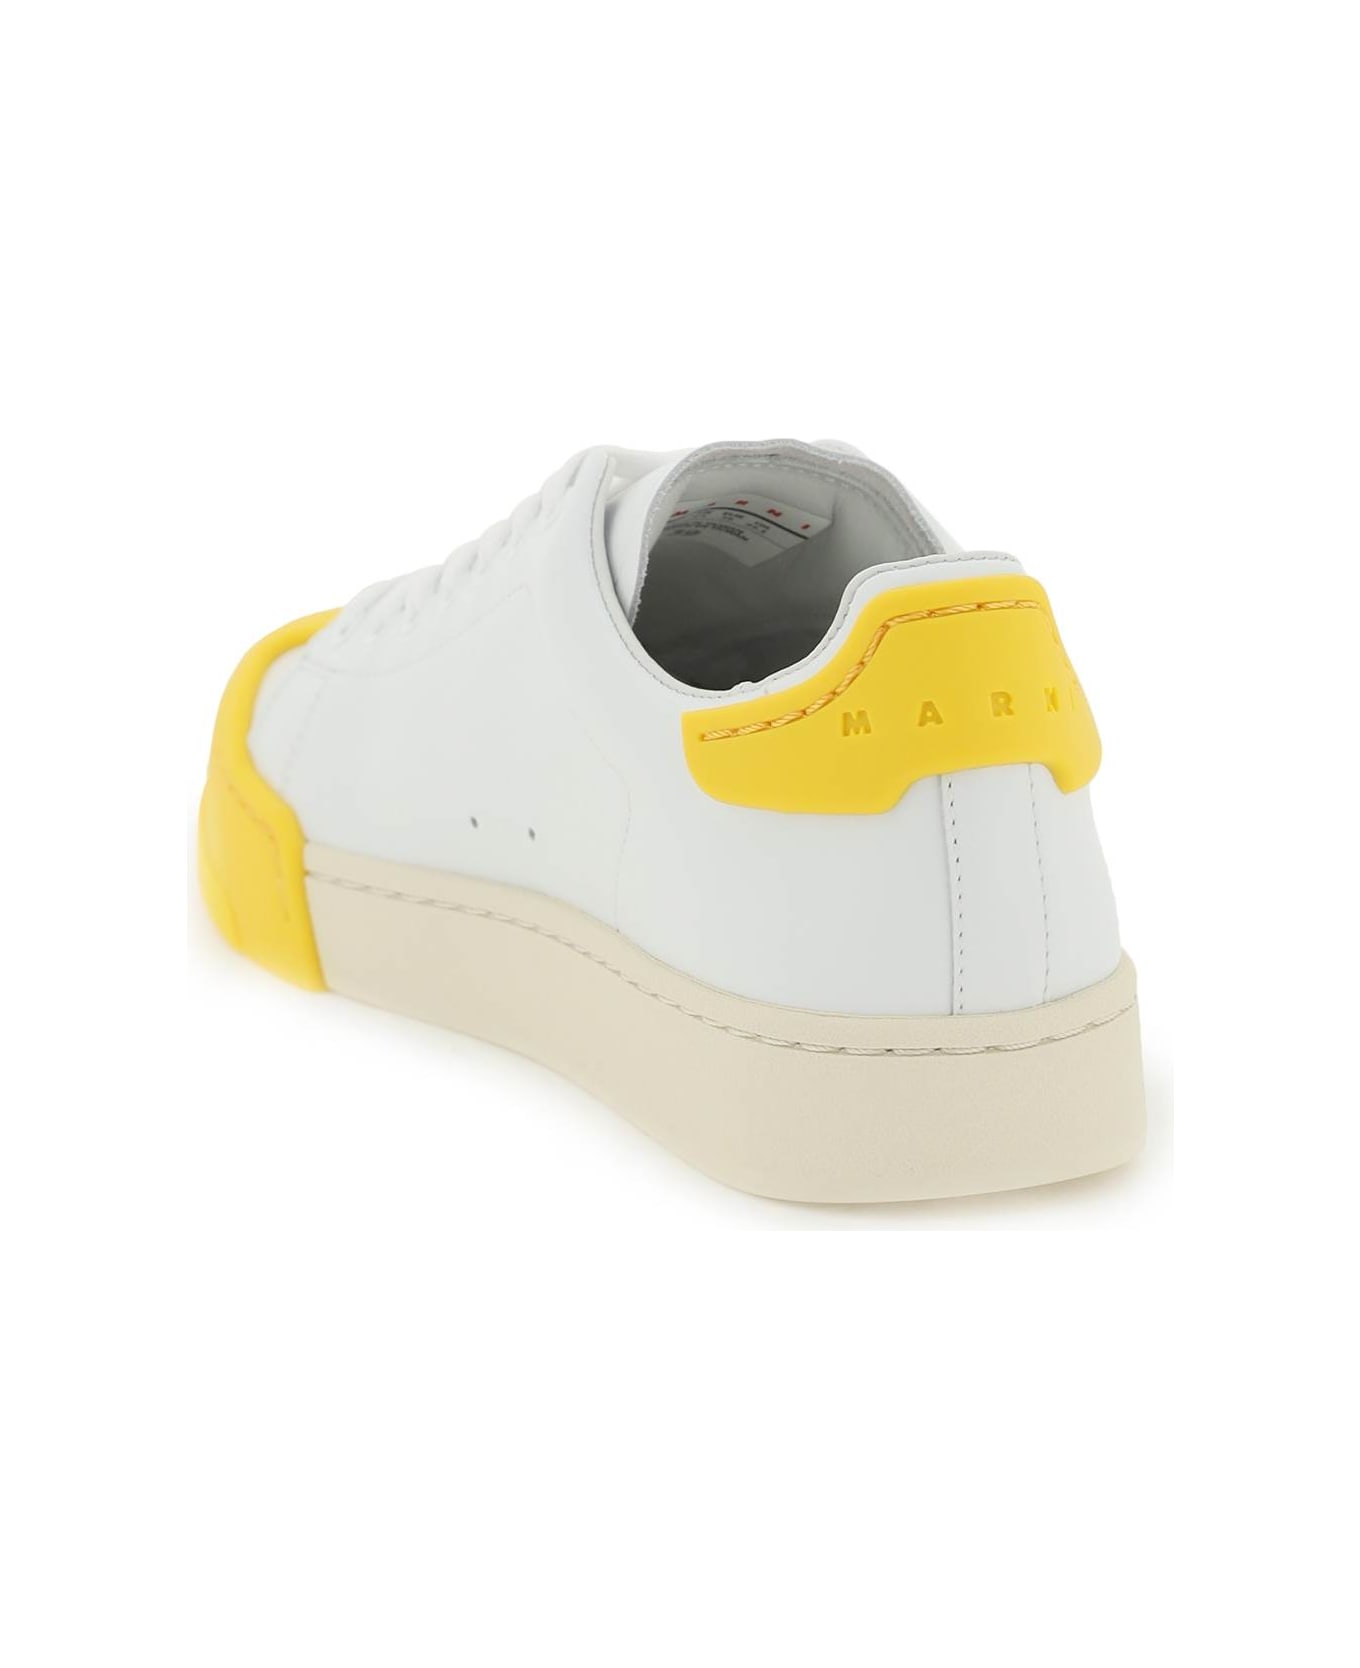 Marni 'dada Bumper' Sneakers - Yellow